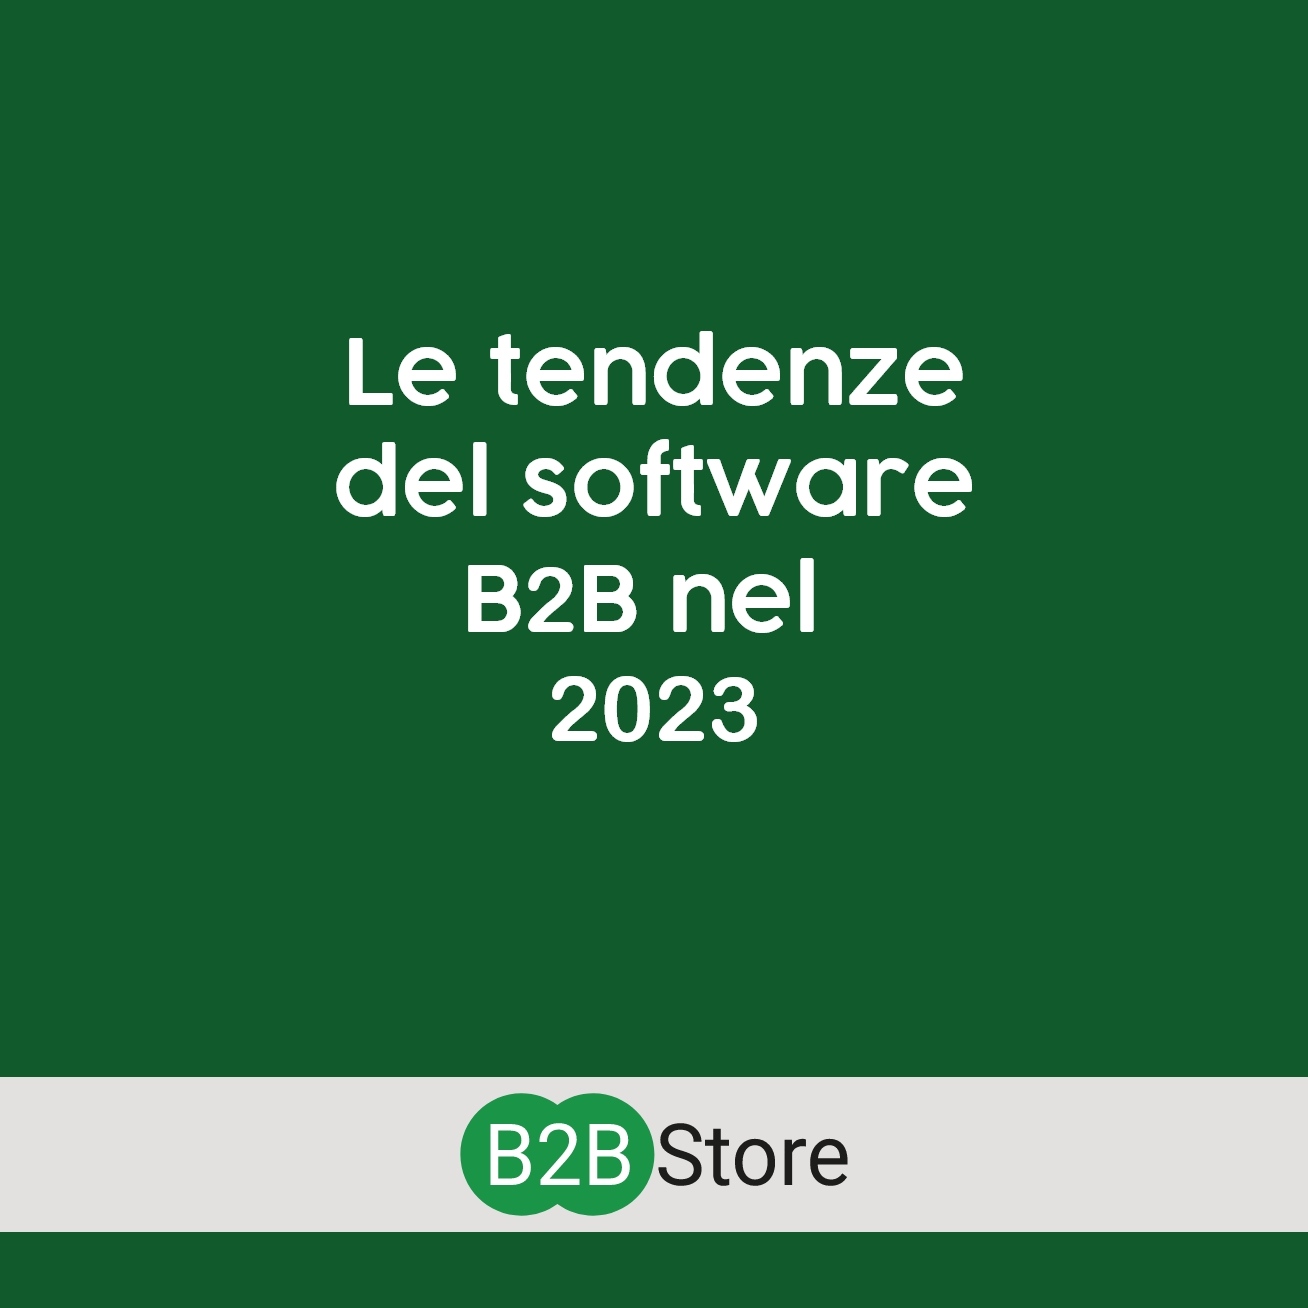 B2B Store, Le tendenze del software B2B nel 2023